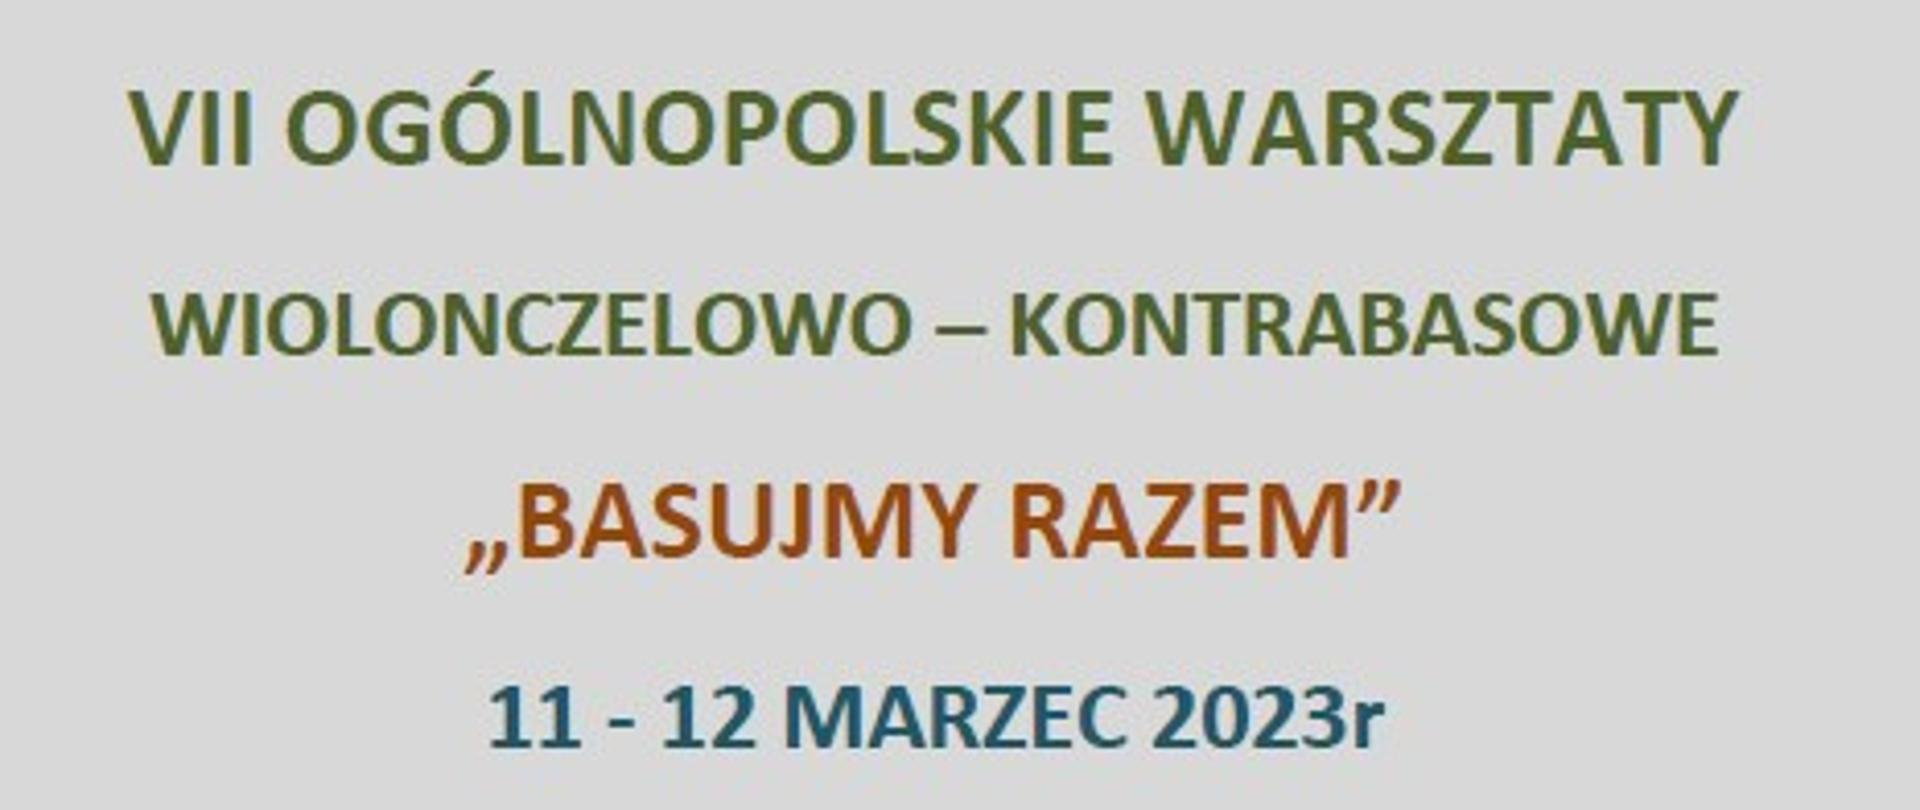 Plakat w sepii informujący o : VII Ogólnopolskie Warsztaty wiolonczelowo - kontrabasowe " Basujmy razem" 11-12.03.2023